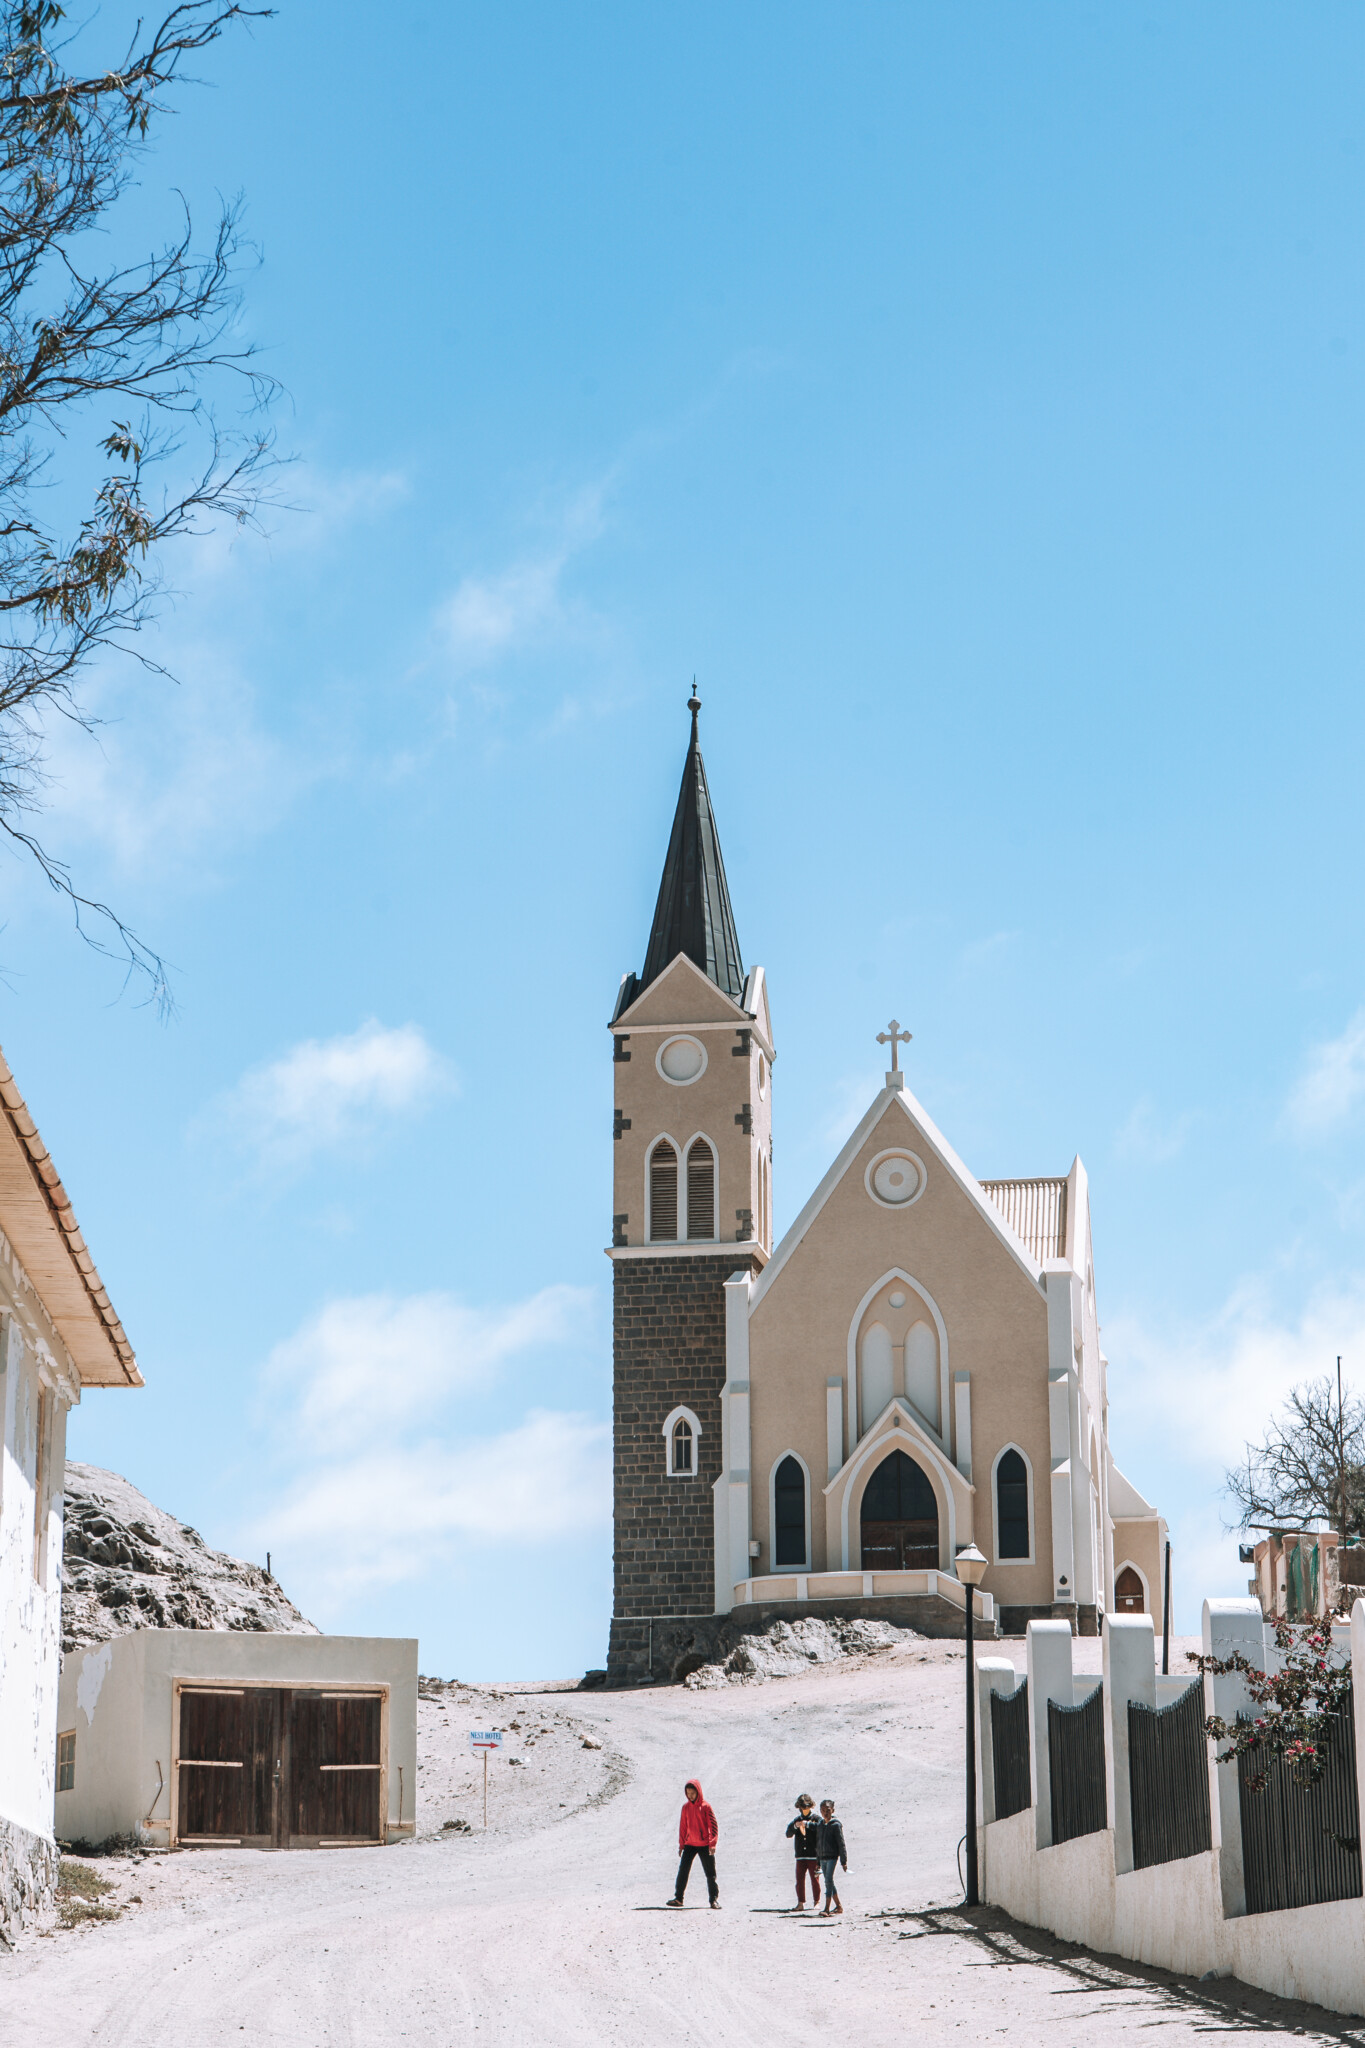 Felsenkirche in Lüderitz